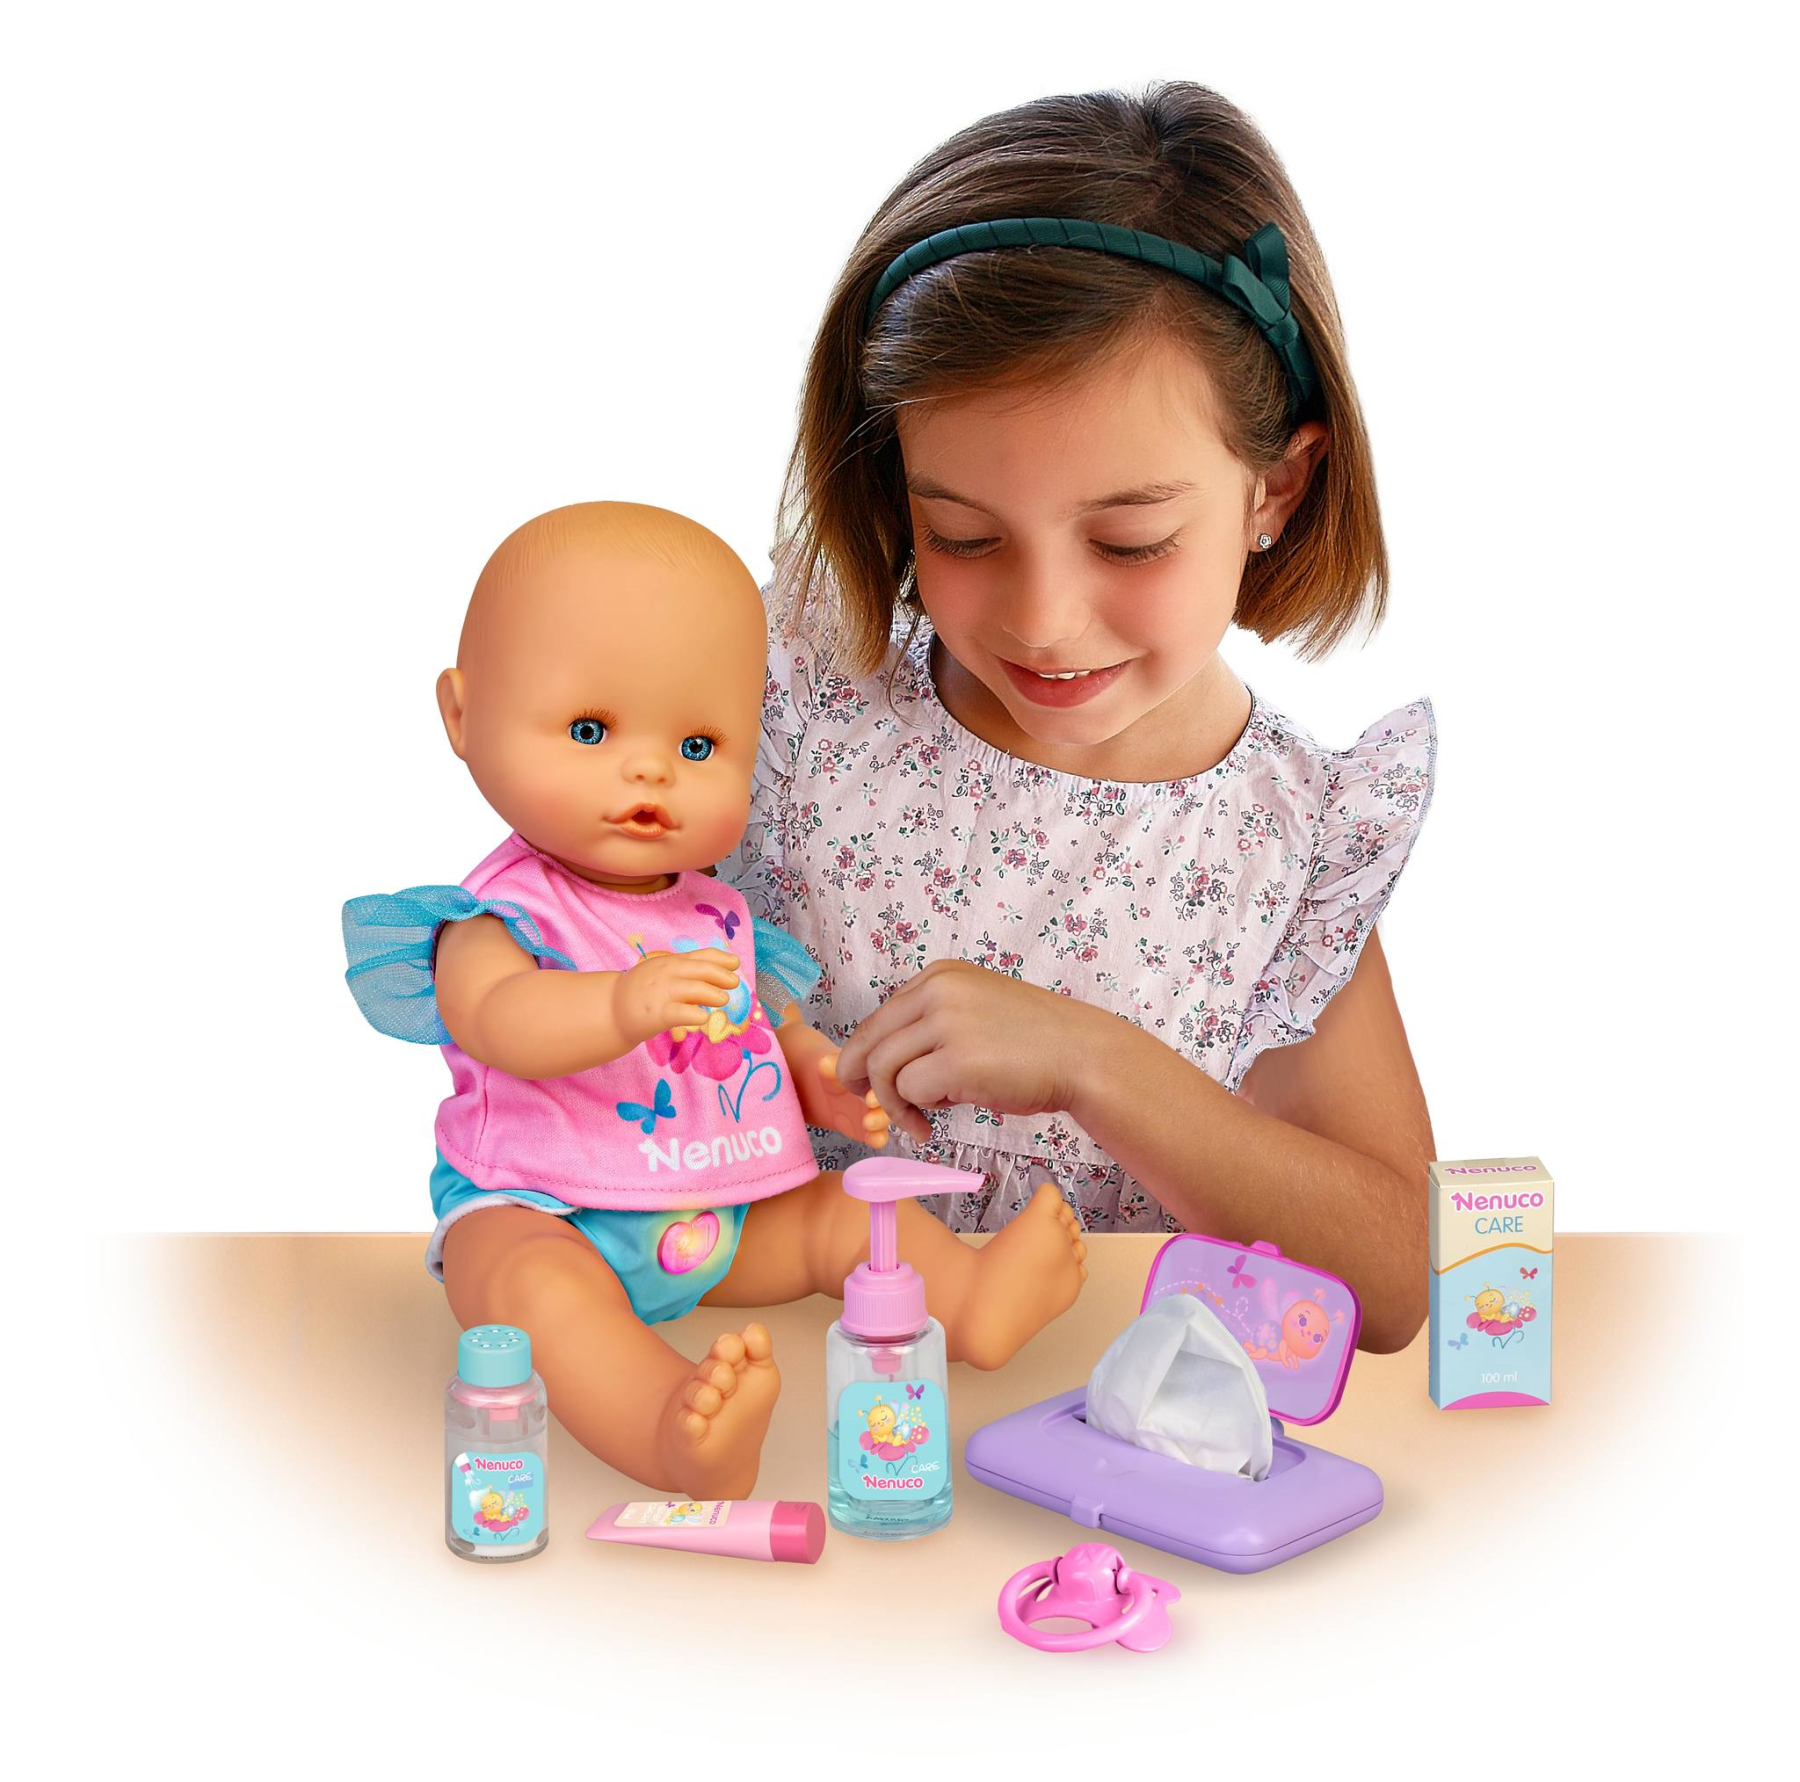 Nenuco pannolino magico, bambola 35 cm con pannolino con luci, inclusi accessori. - NENUCO